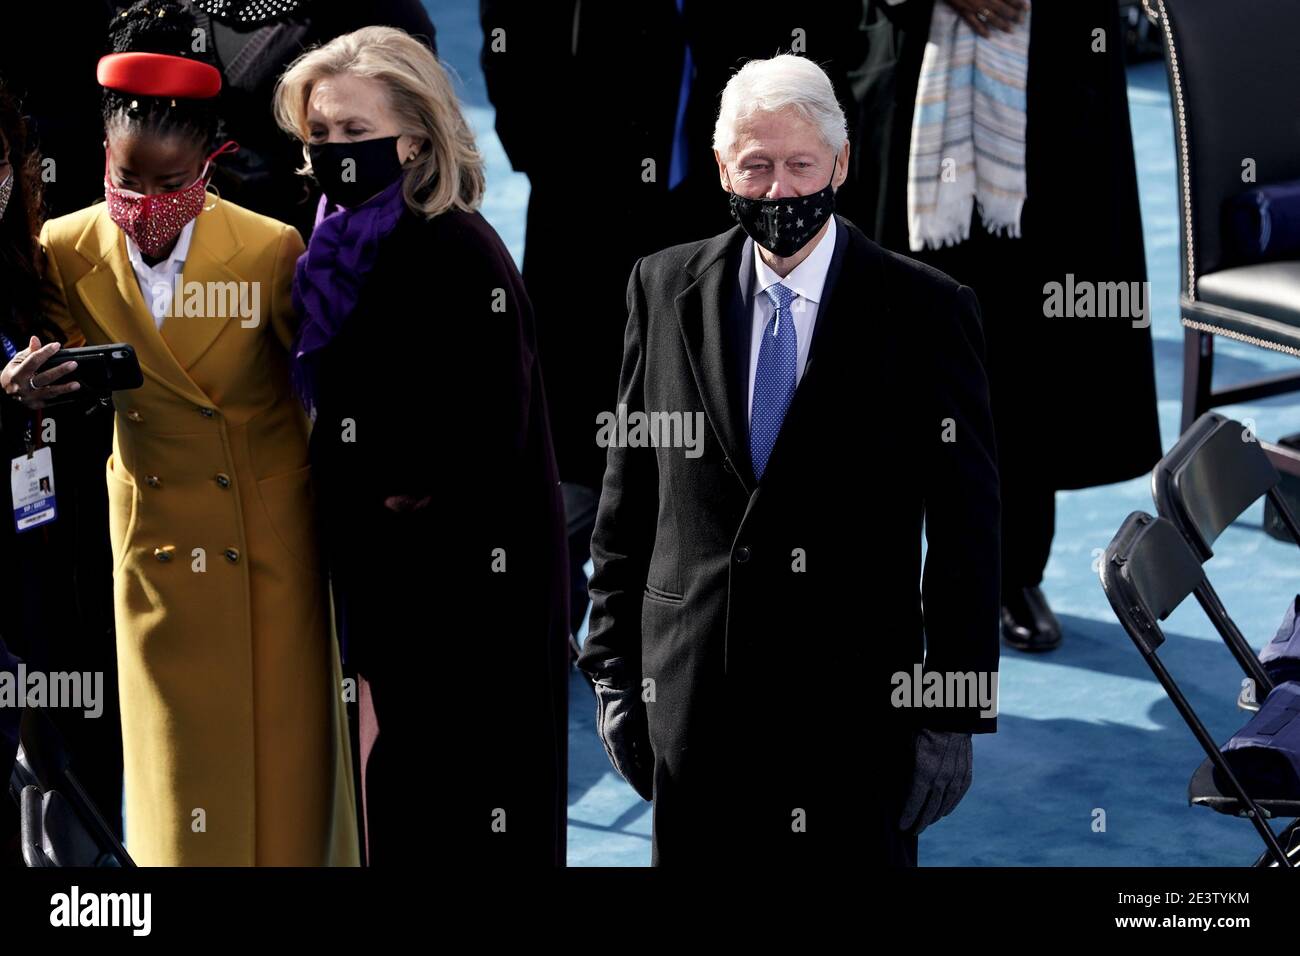 Washington, DC. 20 janvier 2021.l'ancien président Bill Clinton est vu avant la 59e inauguration présidentielle le mercredi 20 janvier 2021 au Capitole des États-Unis à Washington, DC | usage dans le monde crédit: dpa Picture Alliance/Alay Live News Banque D'Images